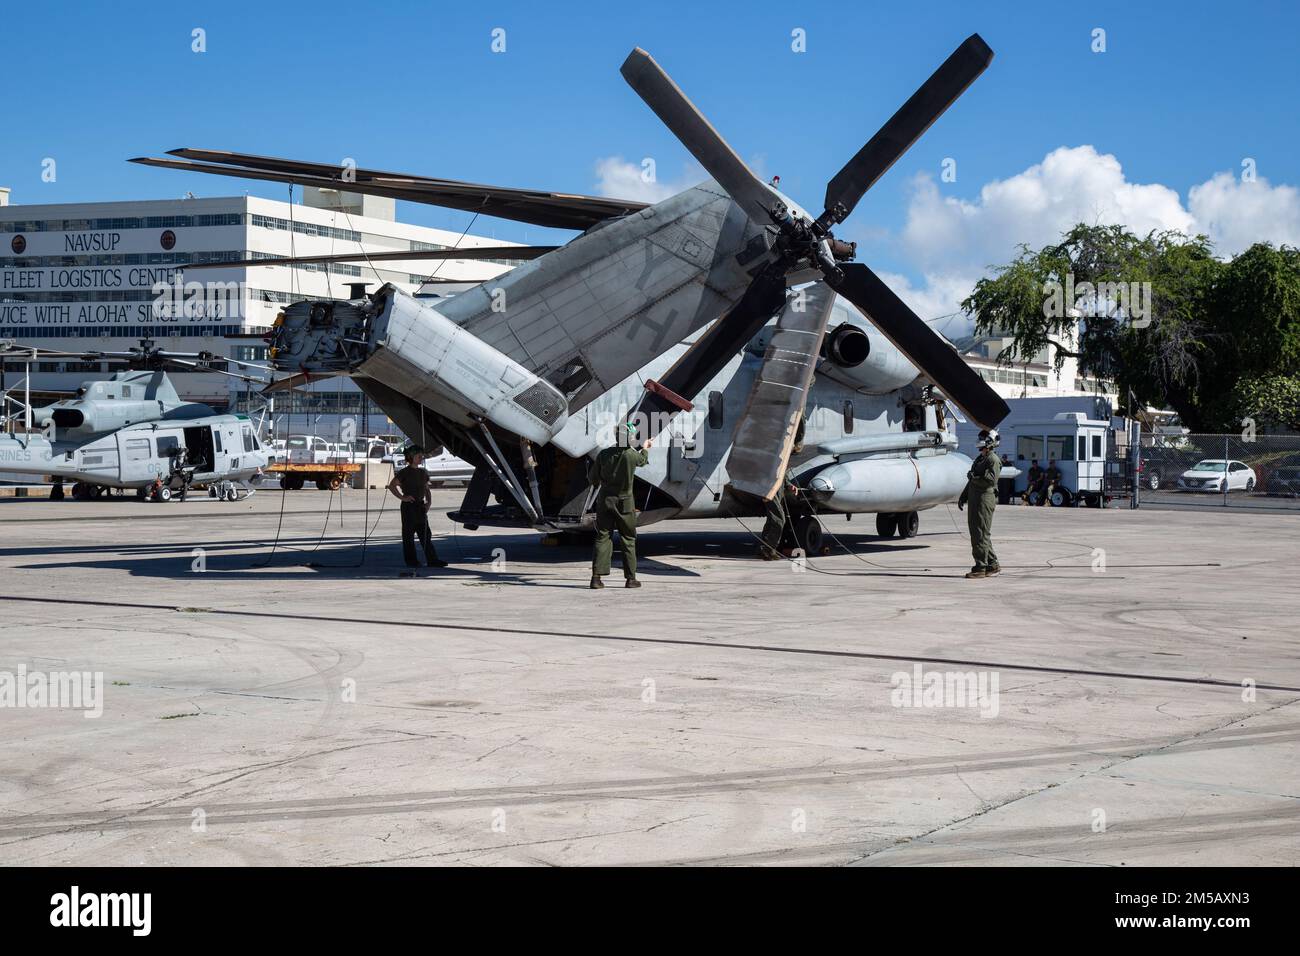 EE.UU Infantes de Marina con el Escuadrón de Helicópteros Pesados Marinos (HMH) 463, entregan helicópteros CH-53E Super Stallion para su transporte a California como parte del Despliegue para Entrenamiento (DFT) en la Base Naval Pearl Harbor, Hawái, el 16 de febrero de 2022. El DFT está diseñado para simular el funcionamiento en un entorno desplegado y para preparar la unidad para cualquier contingencia futura que puedan encontrar durante el despliegue. Foto de stock